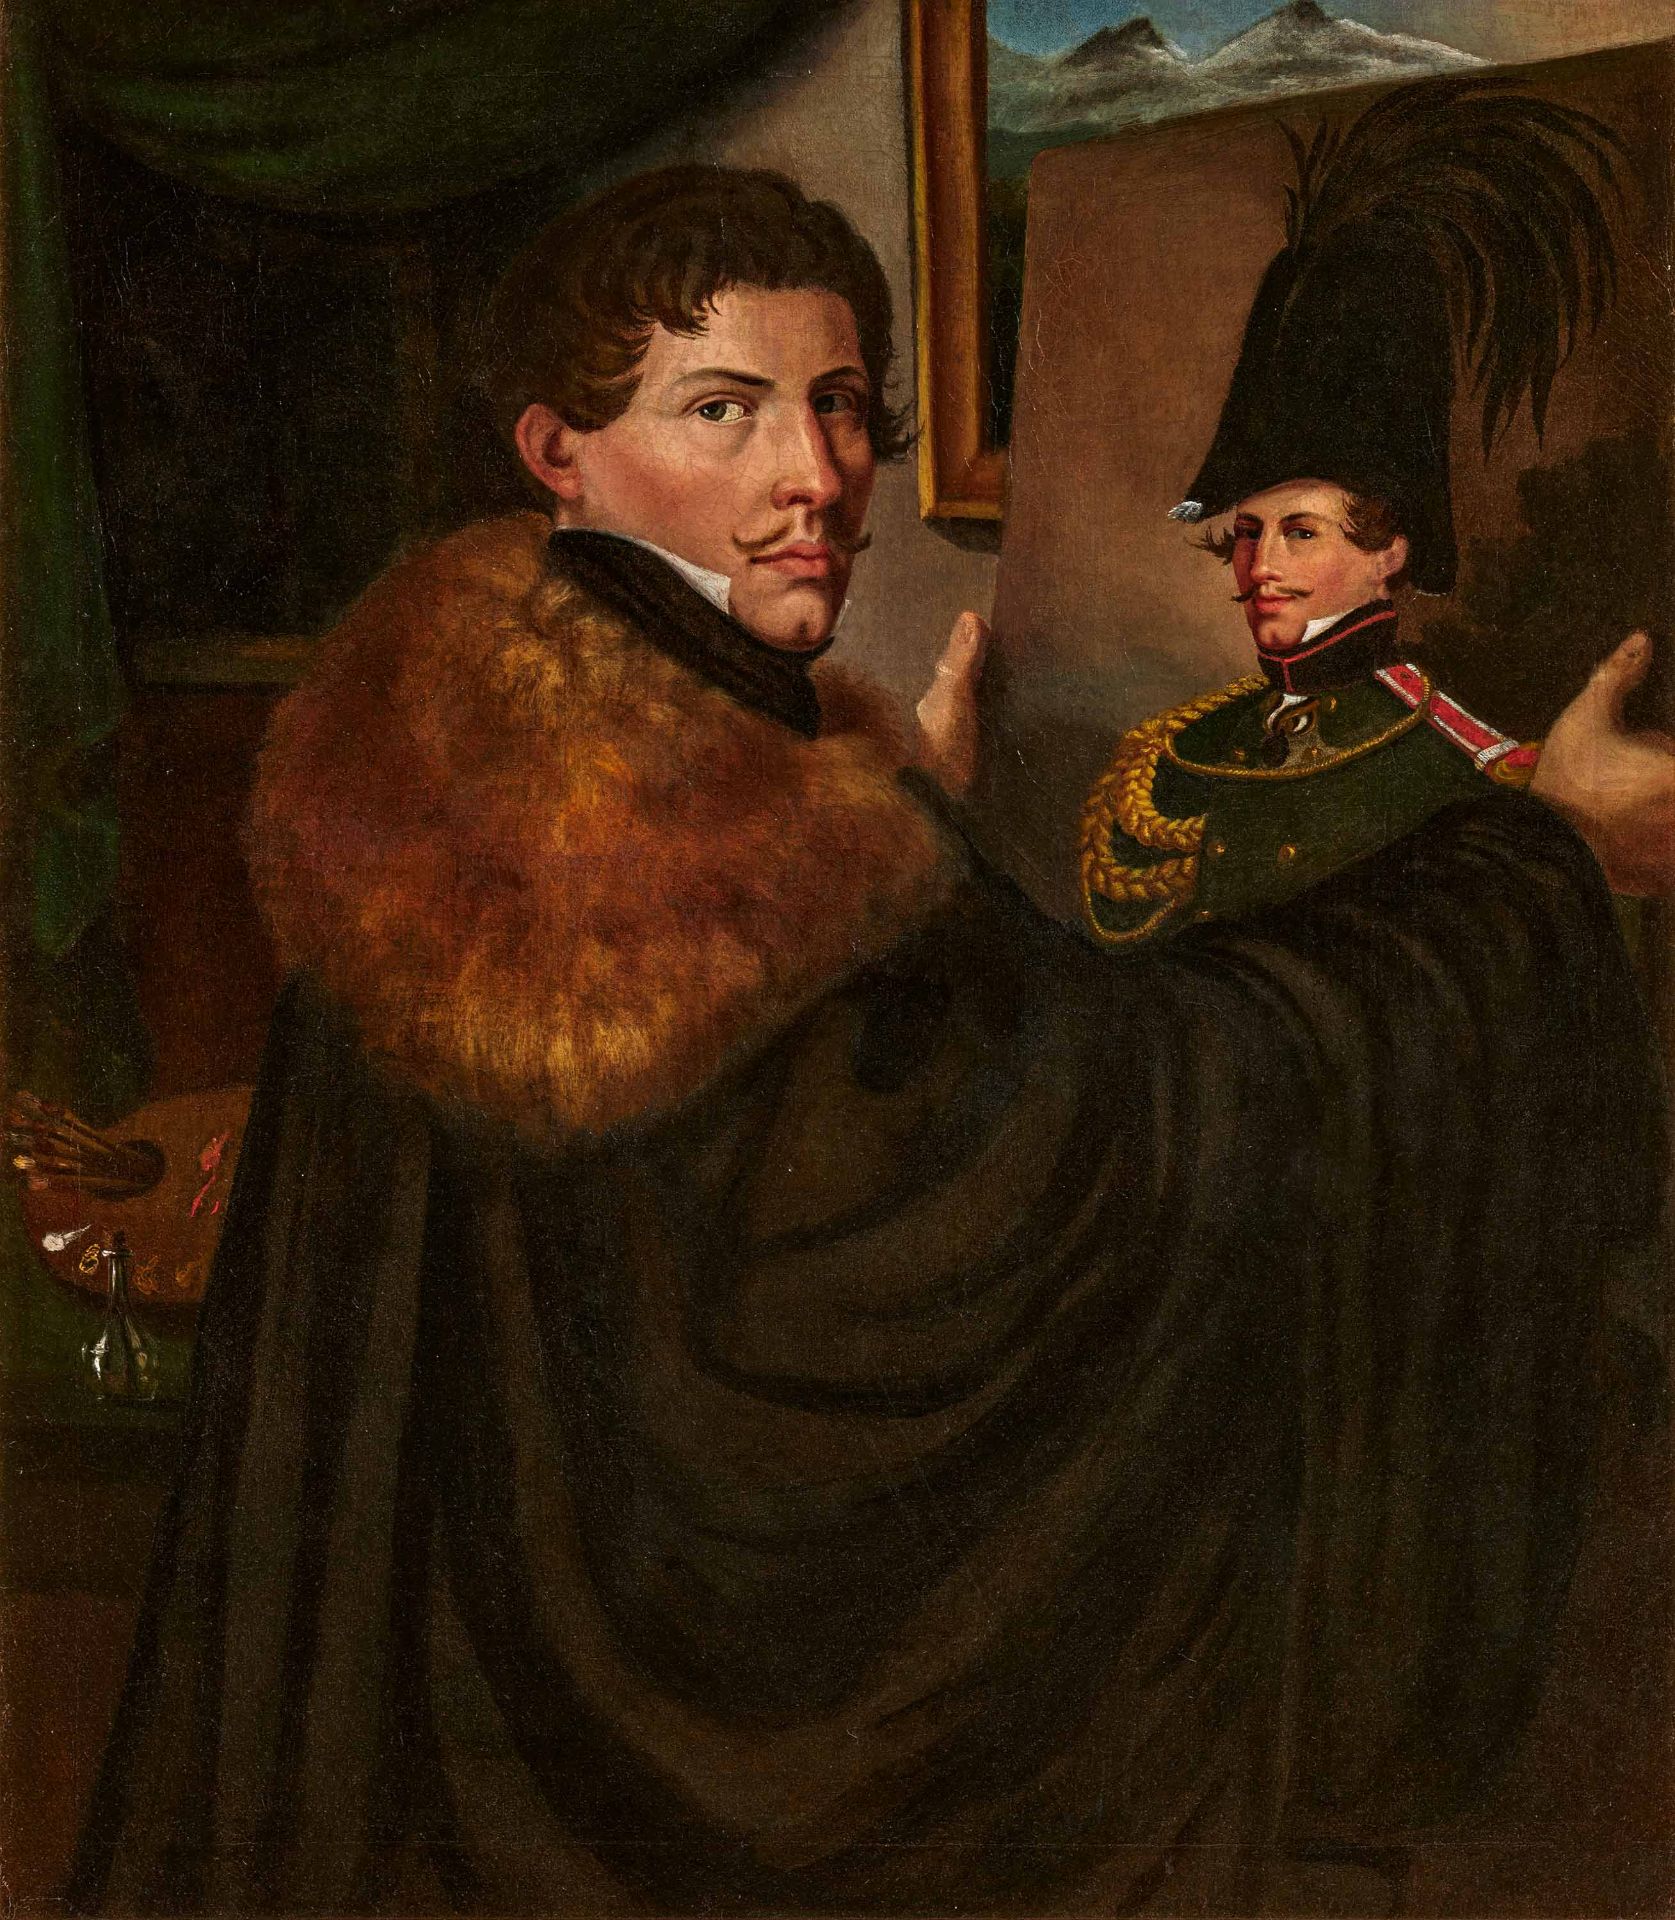 Carl Wilhelm Freiherr von Heideck: The Painter's Self Portrait in front of his Portrait as Bavarian